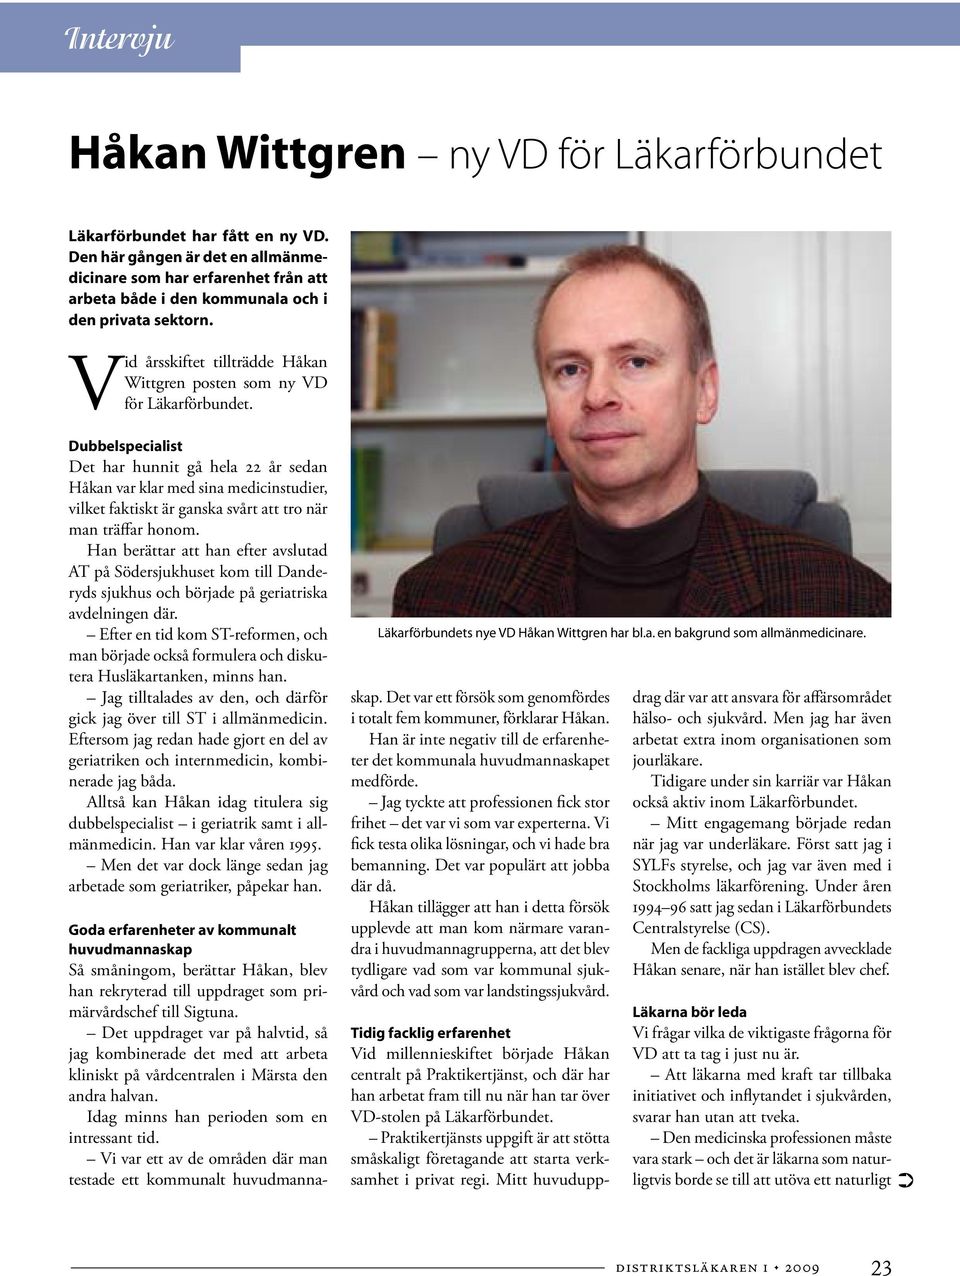 Vid årsskiftet tillträdde Håkan Wittgren posten som ny VD för Läkarförbundet.